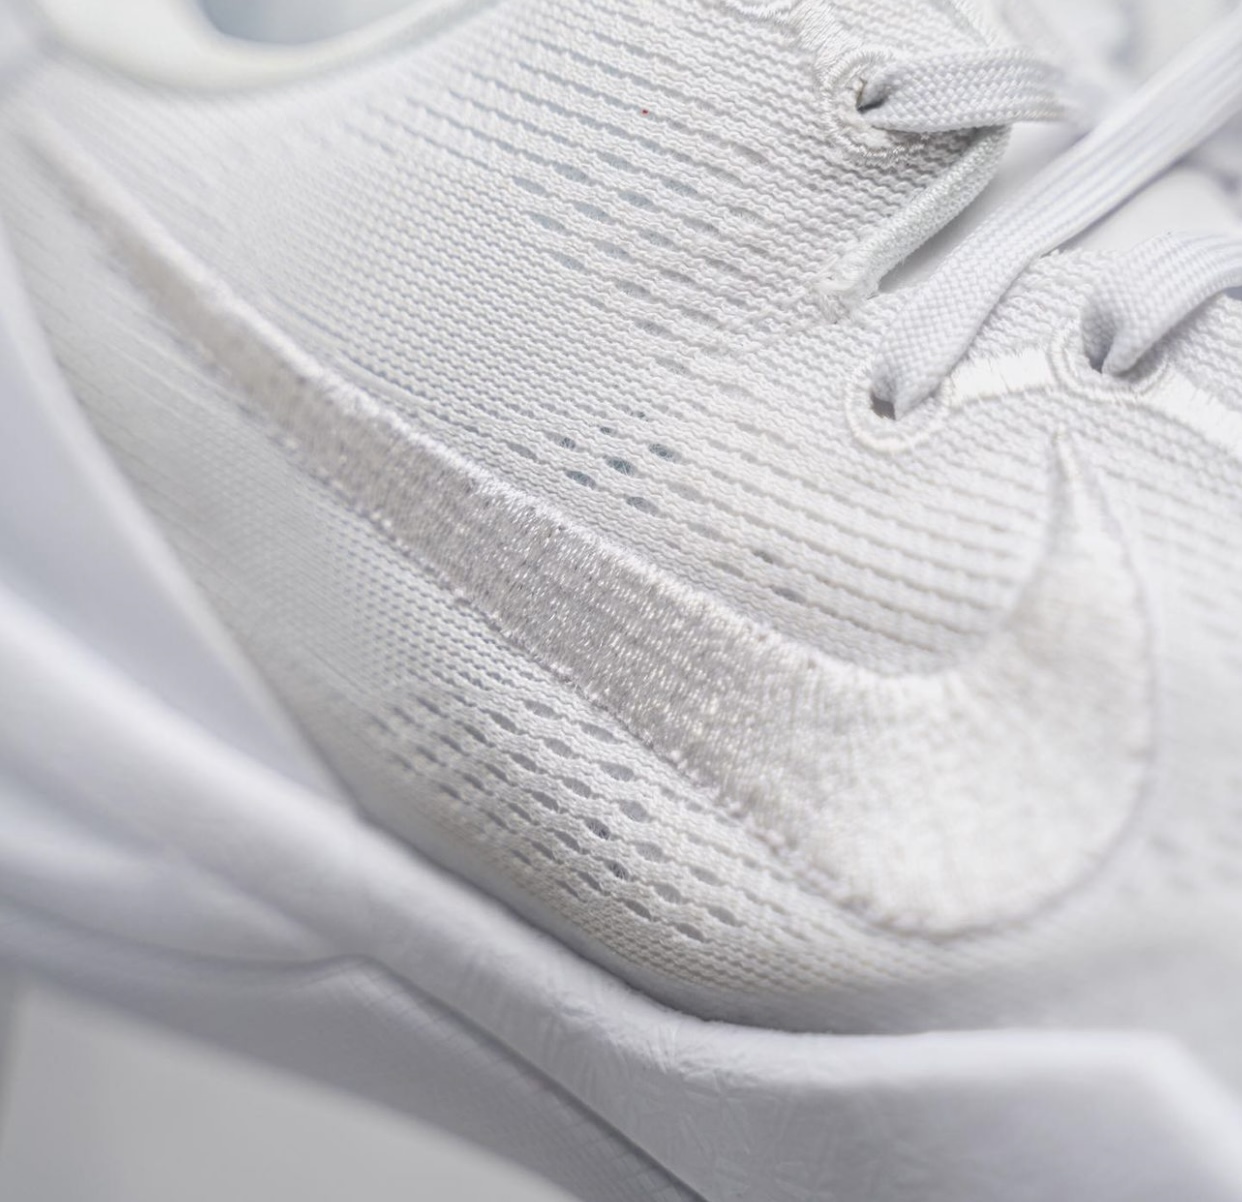 Nike Kobe 8 Protro White